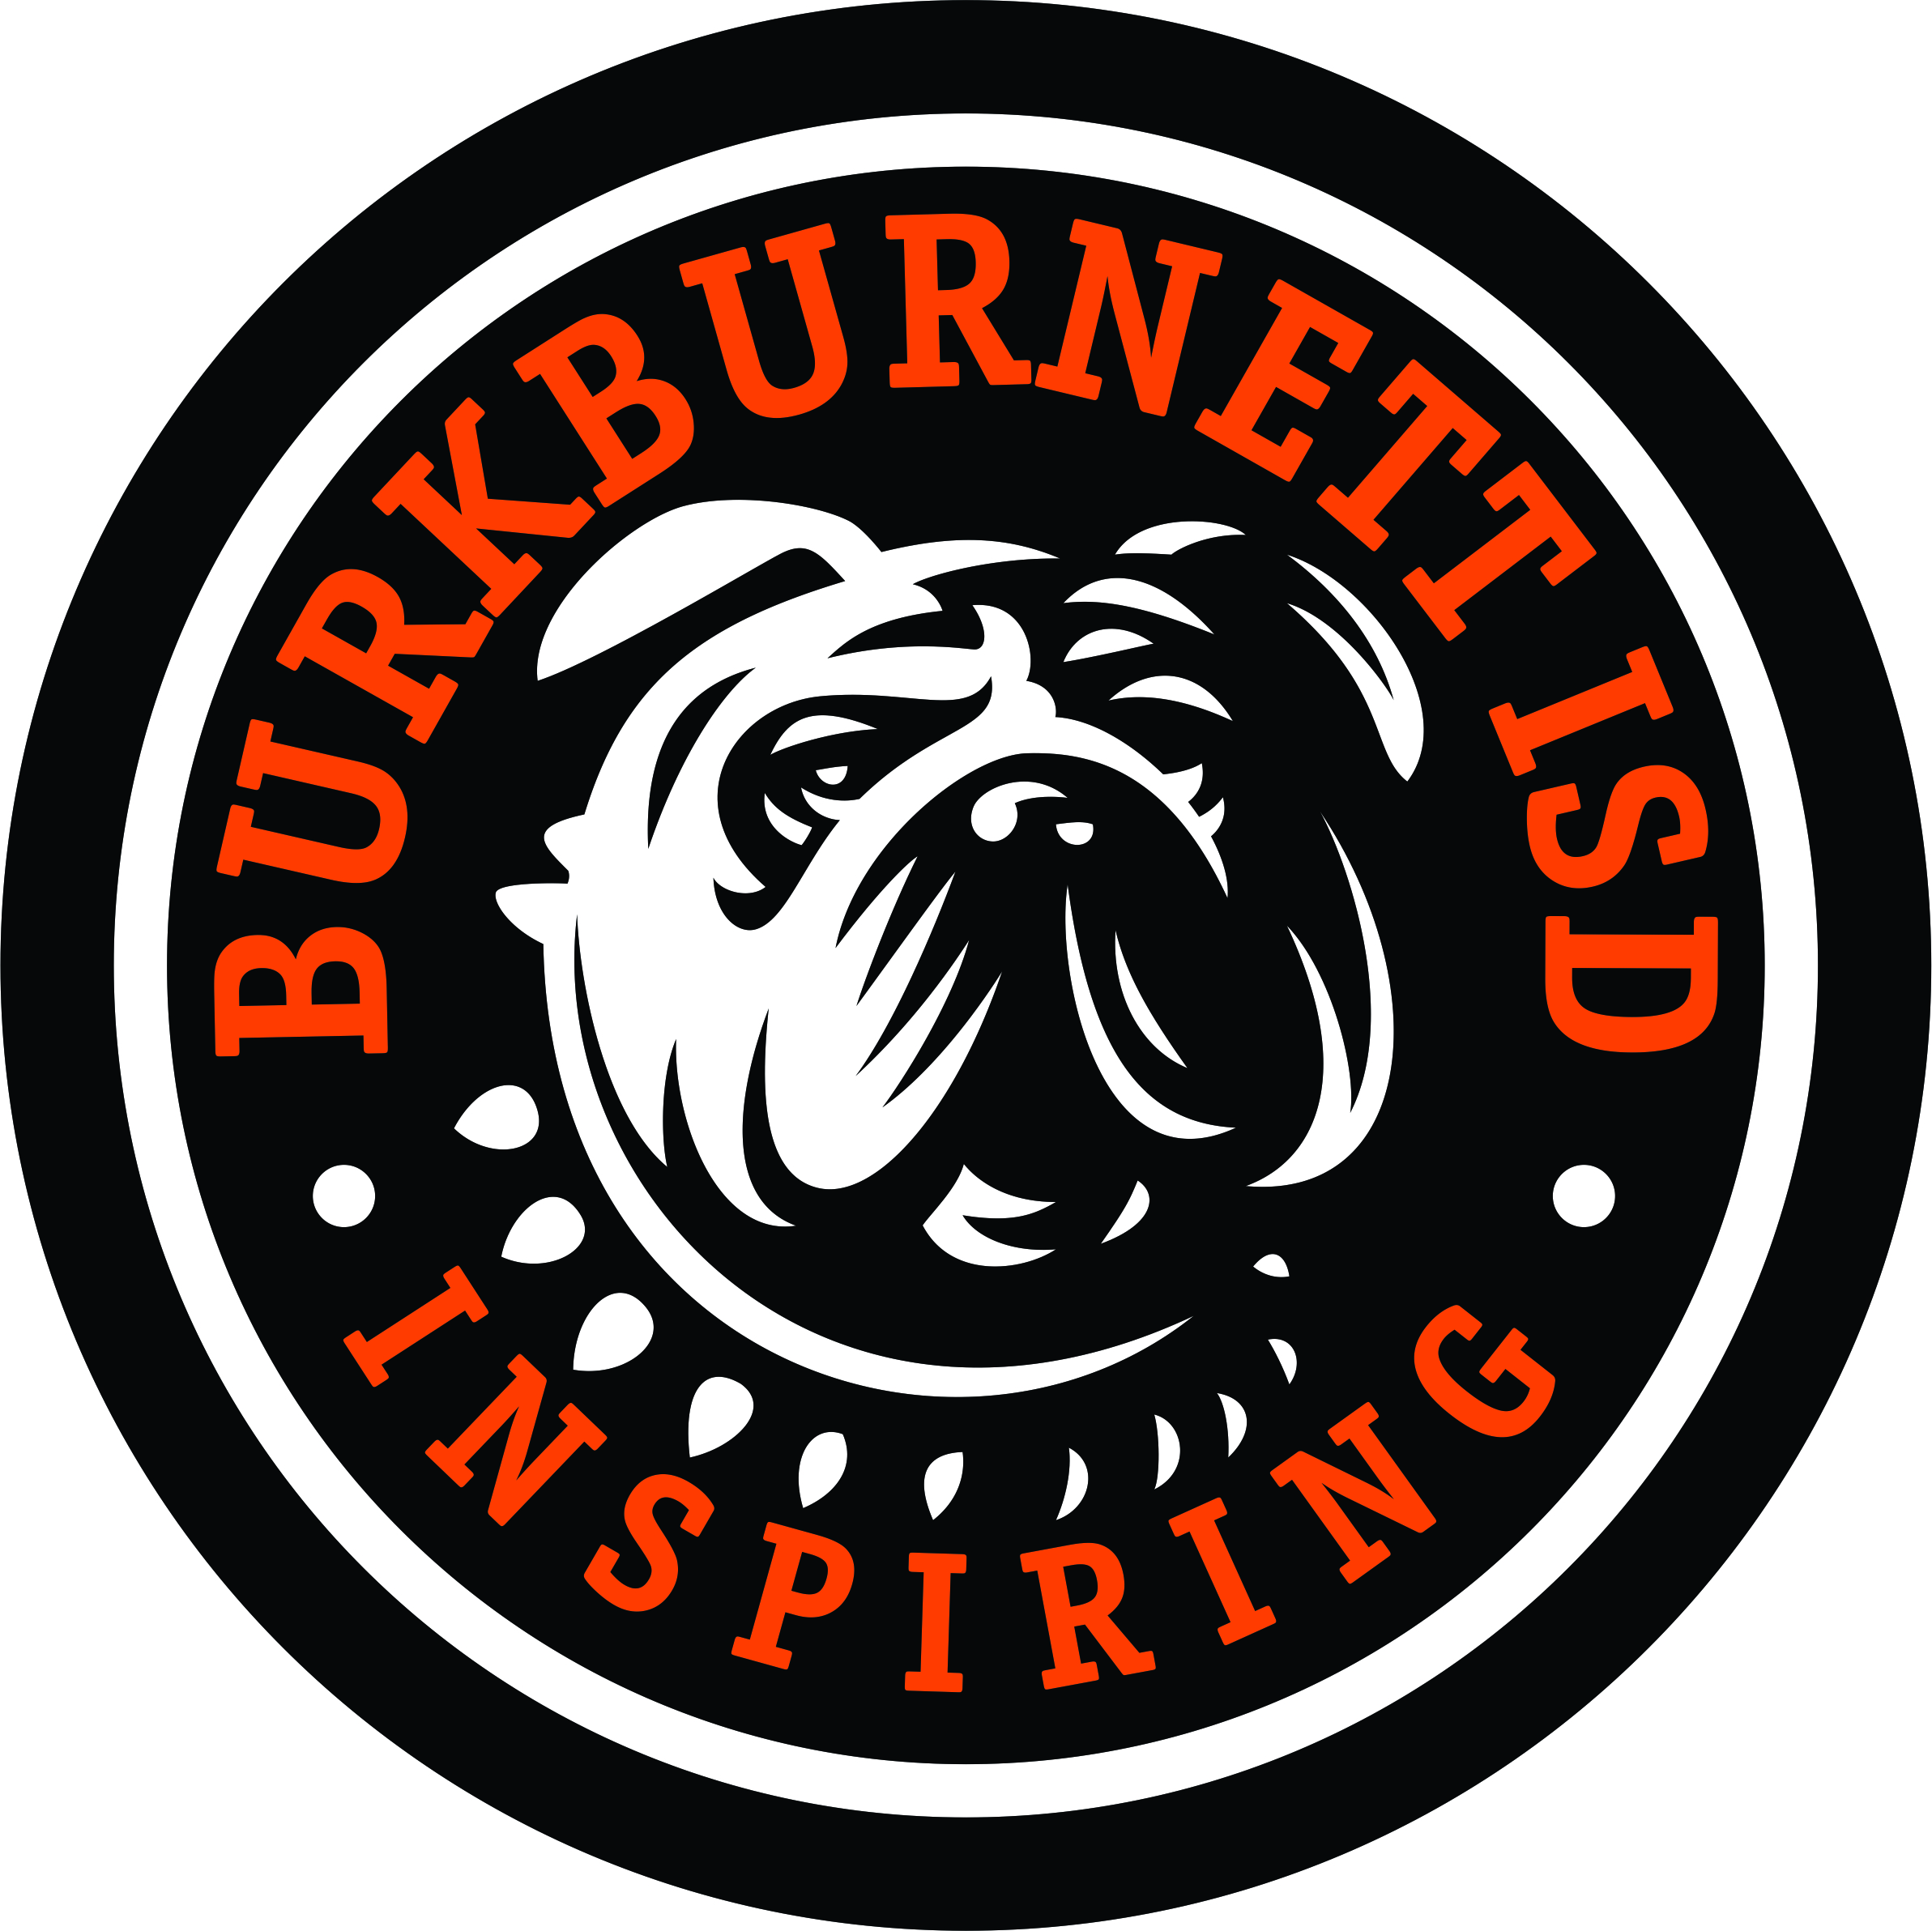 Burkburnett ISD's Logo